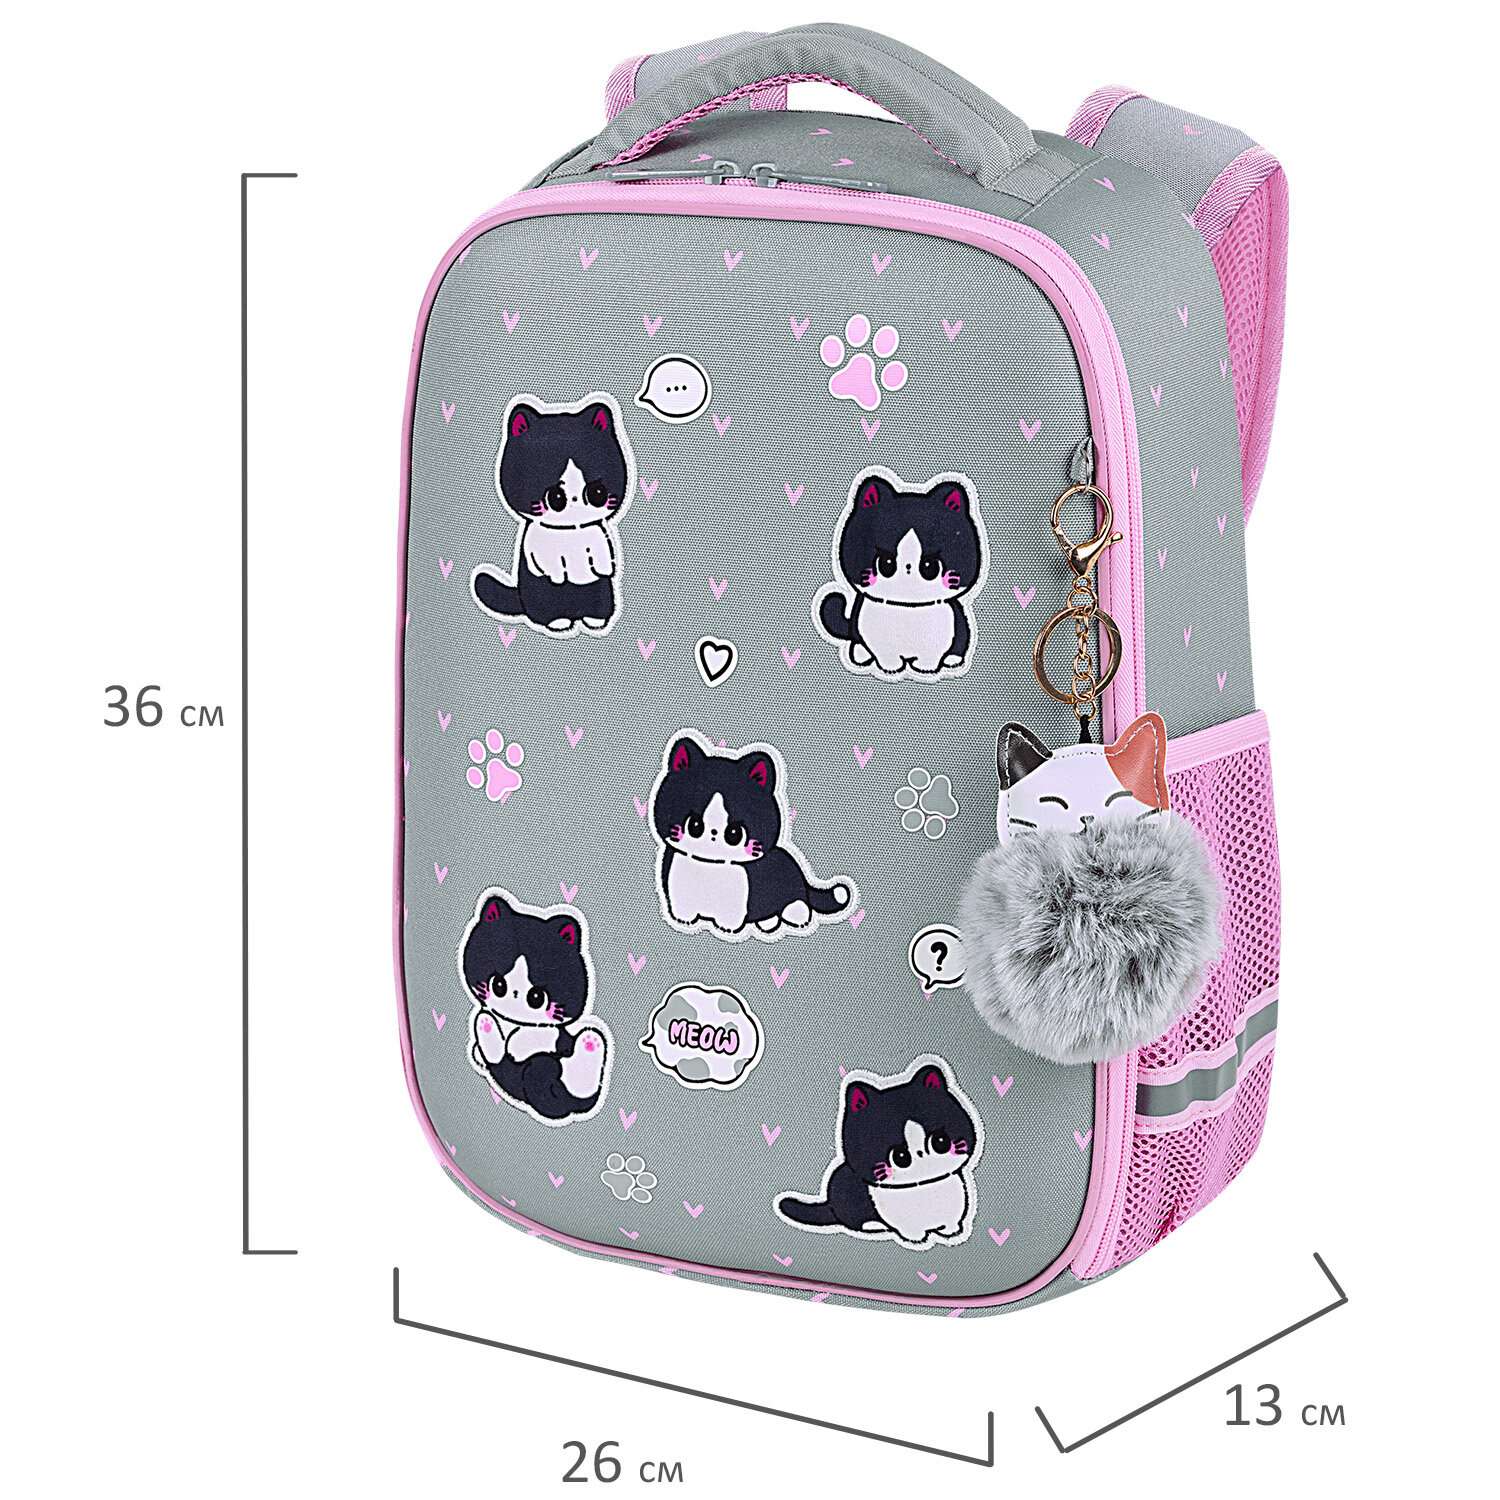 Рюкзак школьный Brauberg портфель детский ранец в 1 класс - фото 3